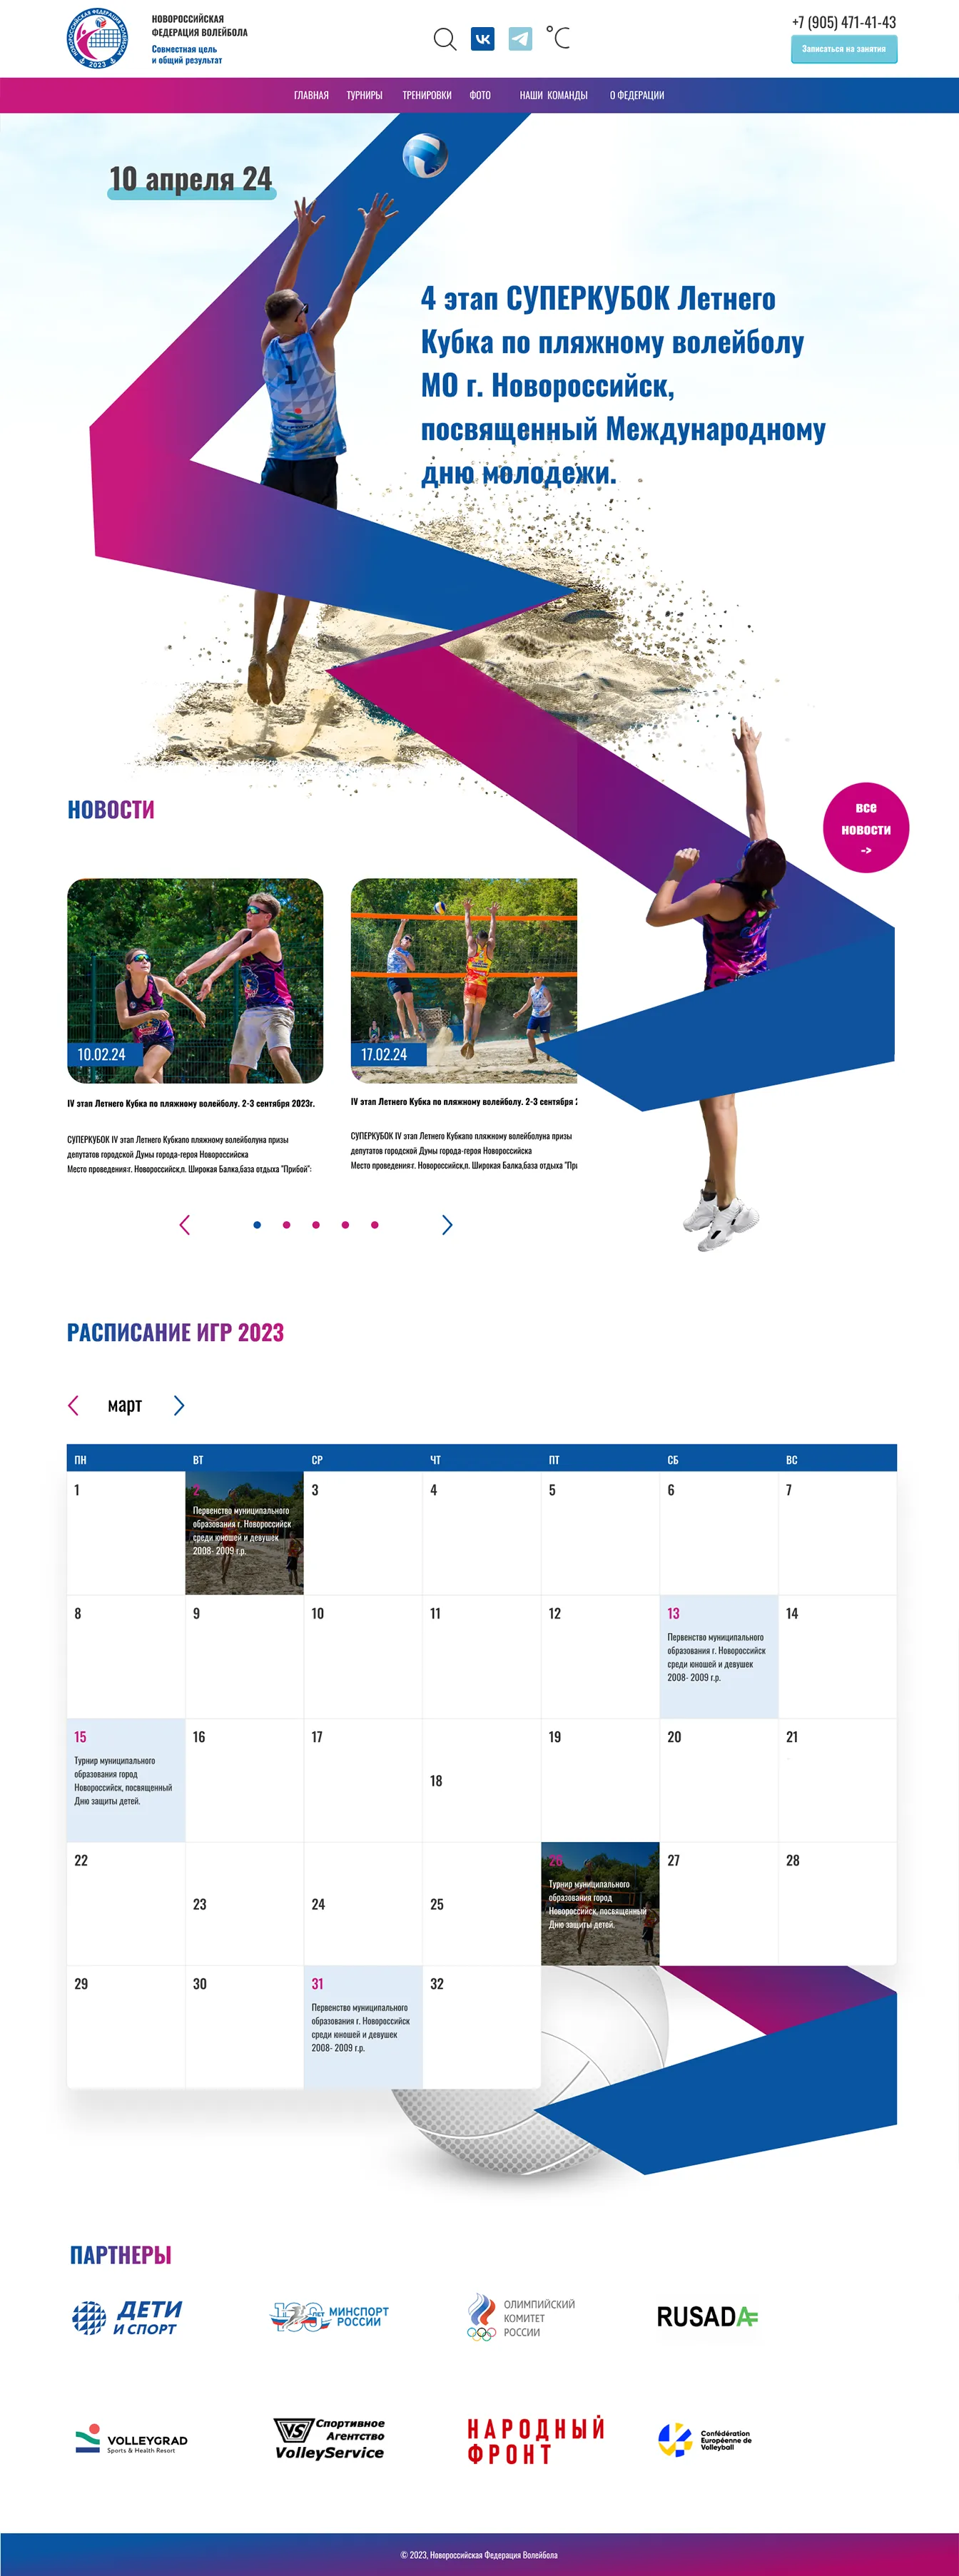 Портфолио, разработка официального сайта Новороссийской федерации волейбола